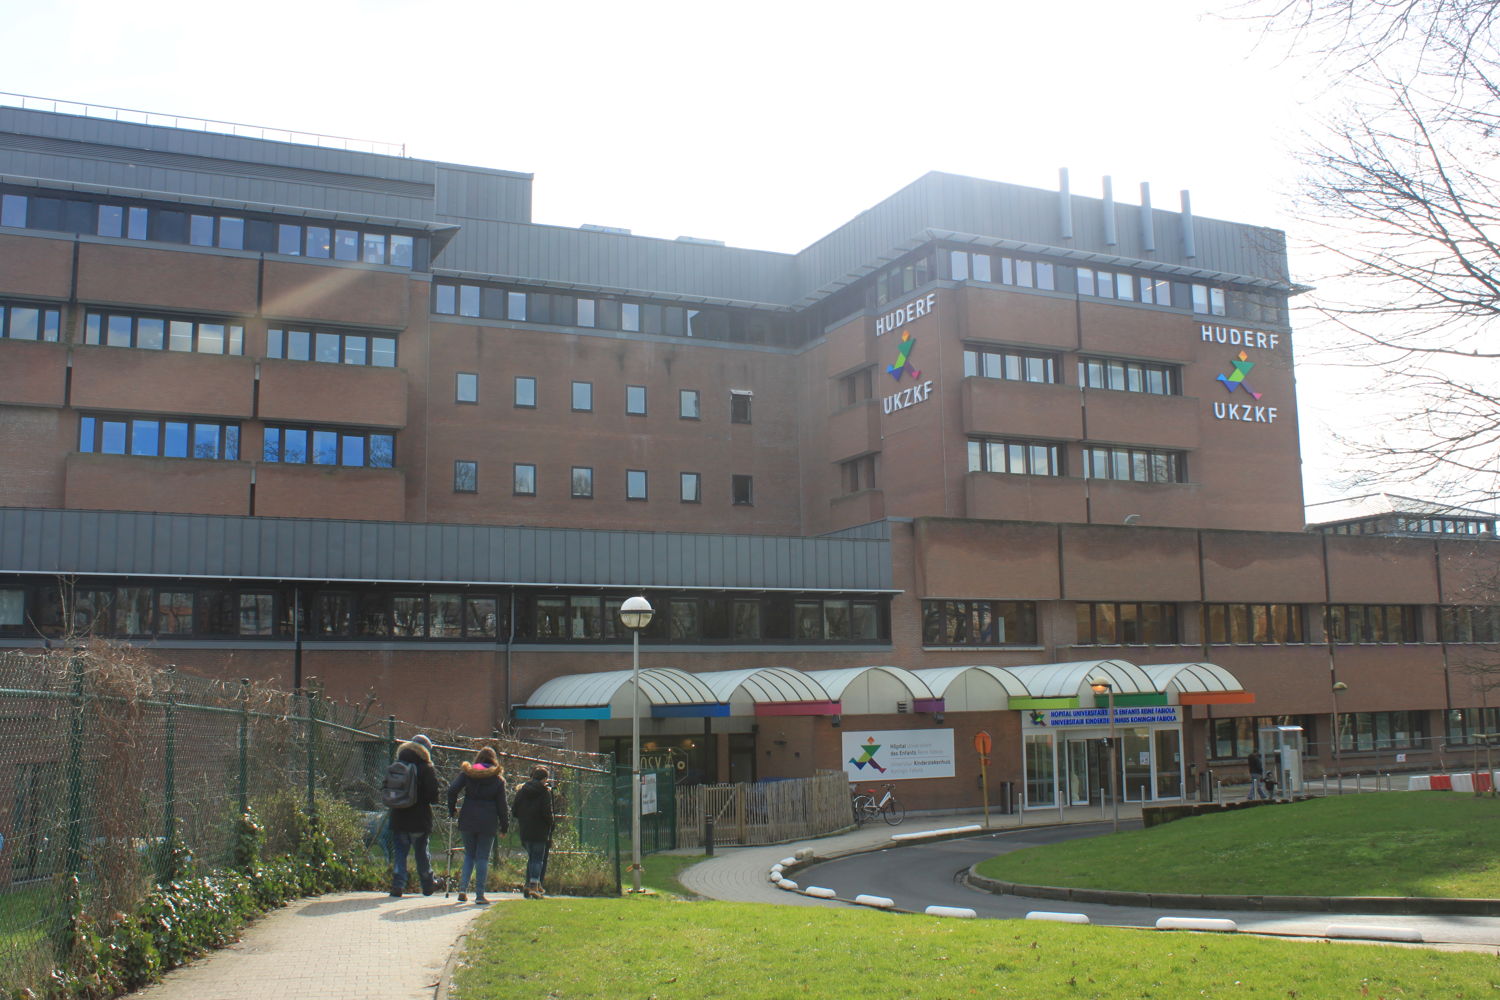 Universitair Kinderziekenhuis Koningin Fabiola
Hôpital Universitaire des Enfants Reine Fabiola